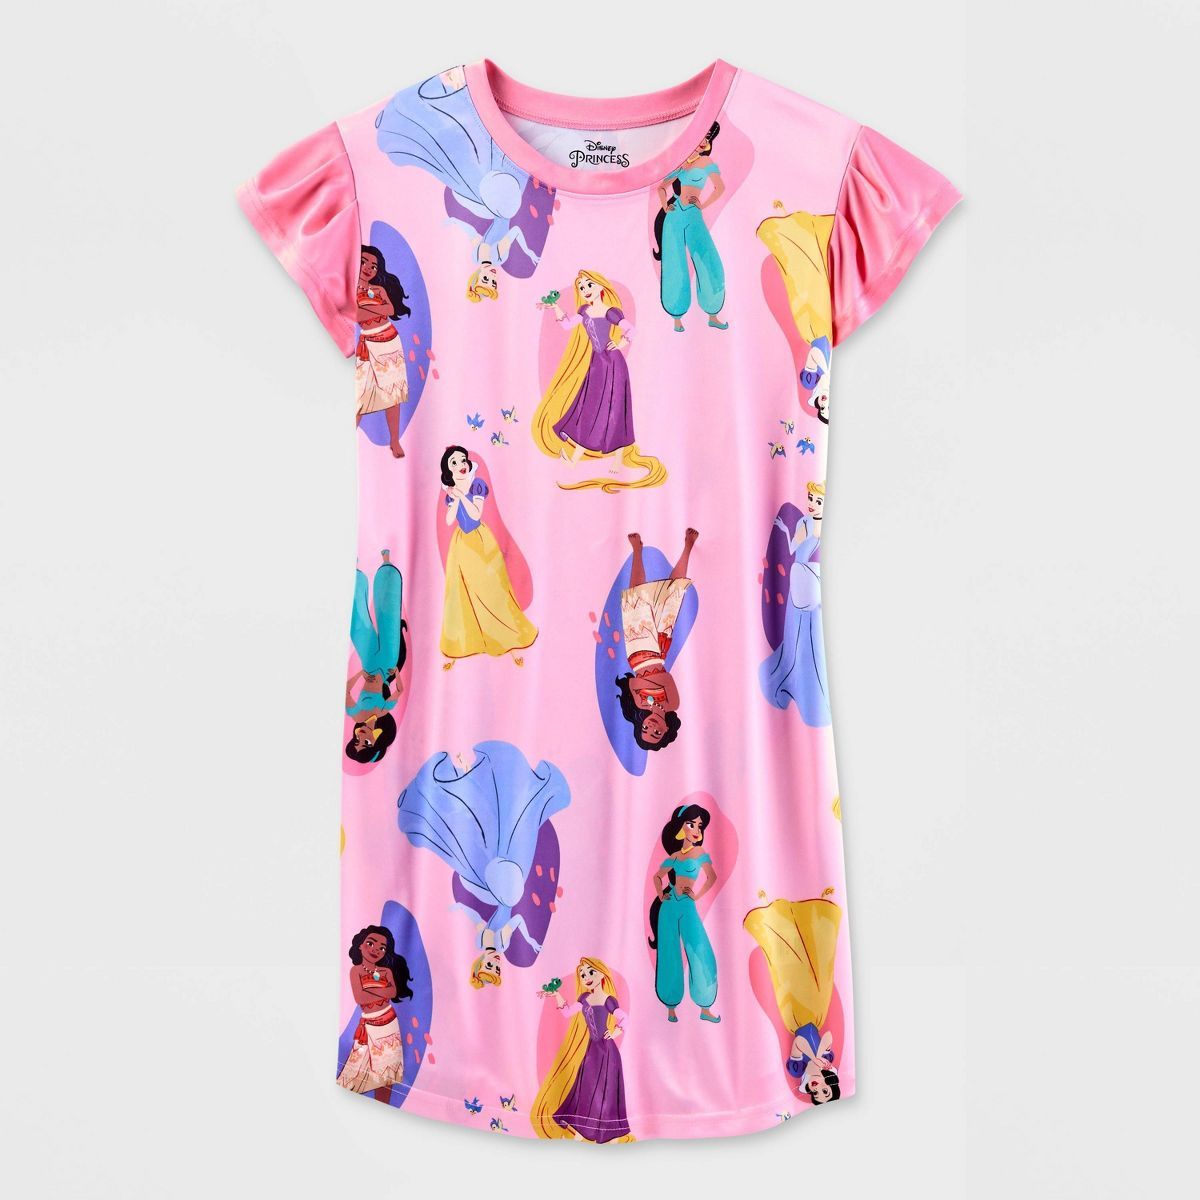 Girls' Disney Princess NightGown - Pink | Target